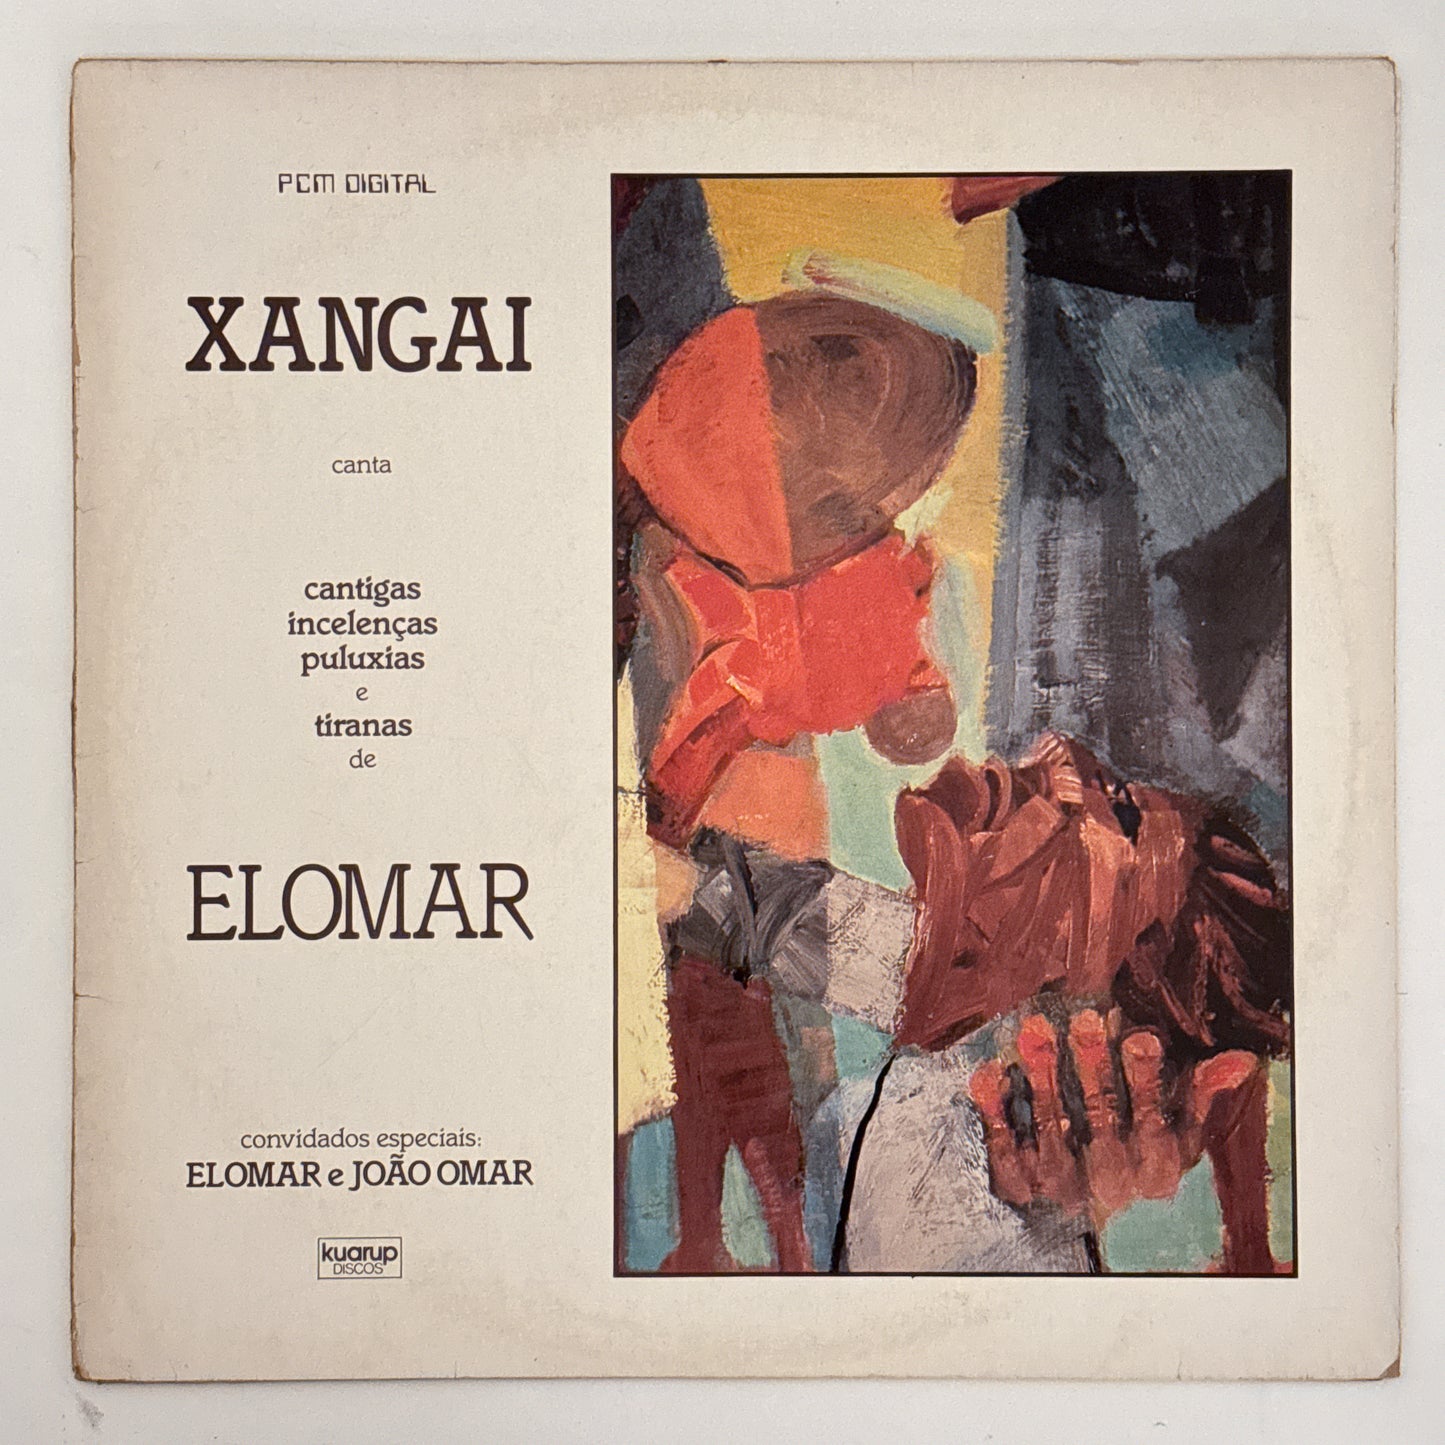 Xangai - Xangai Canta Cantigas, Incelenças, Puluxias E Tiranas De Elomar (LP)